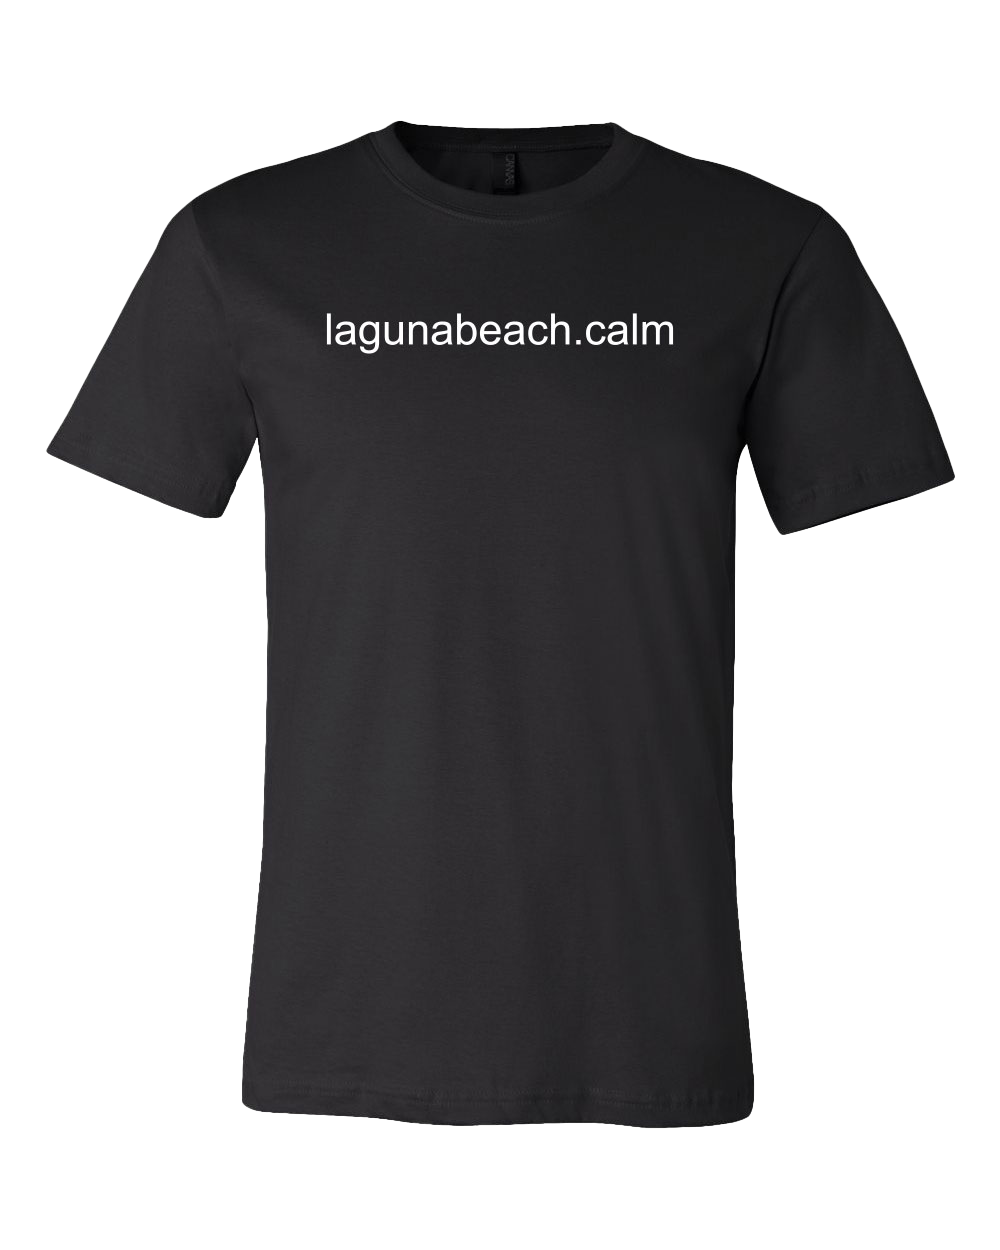 Laguna Beach Calm Unisex Tee - Black